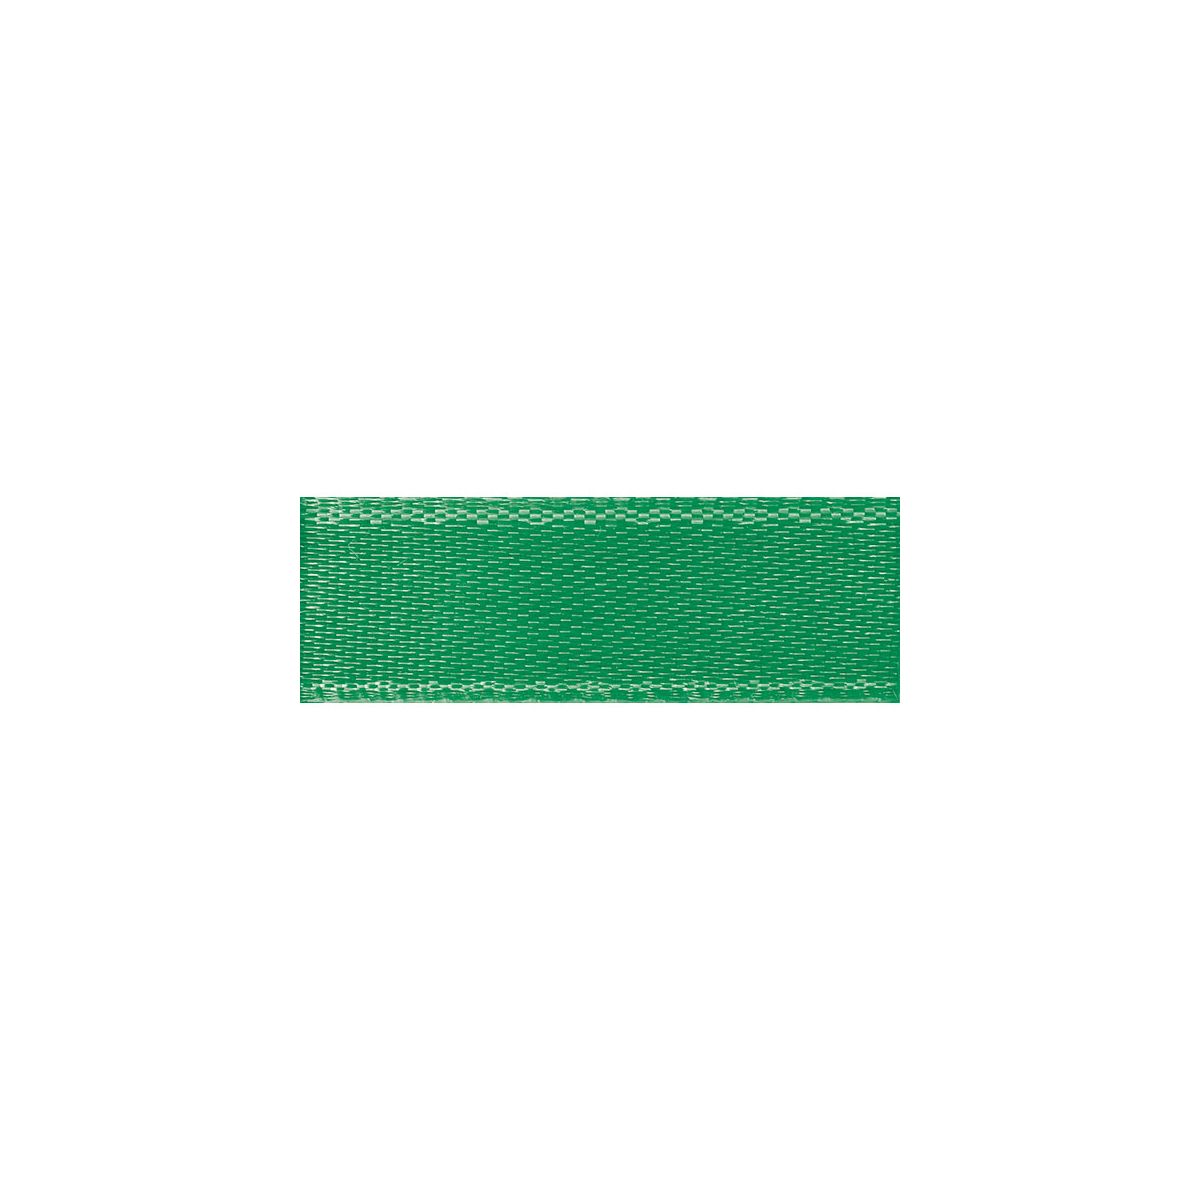 Wstążka Titanum Craft-Fun Series satynowa 6mm zielony 25m (6/25/19)